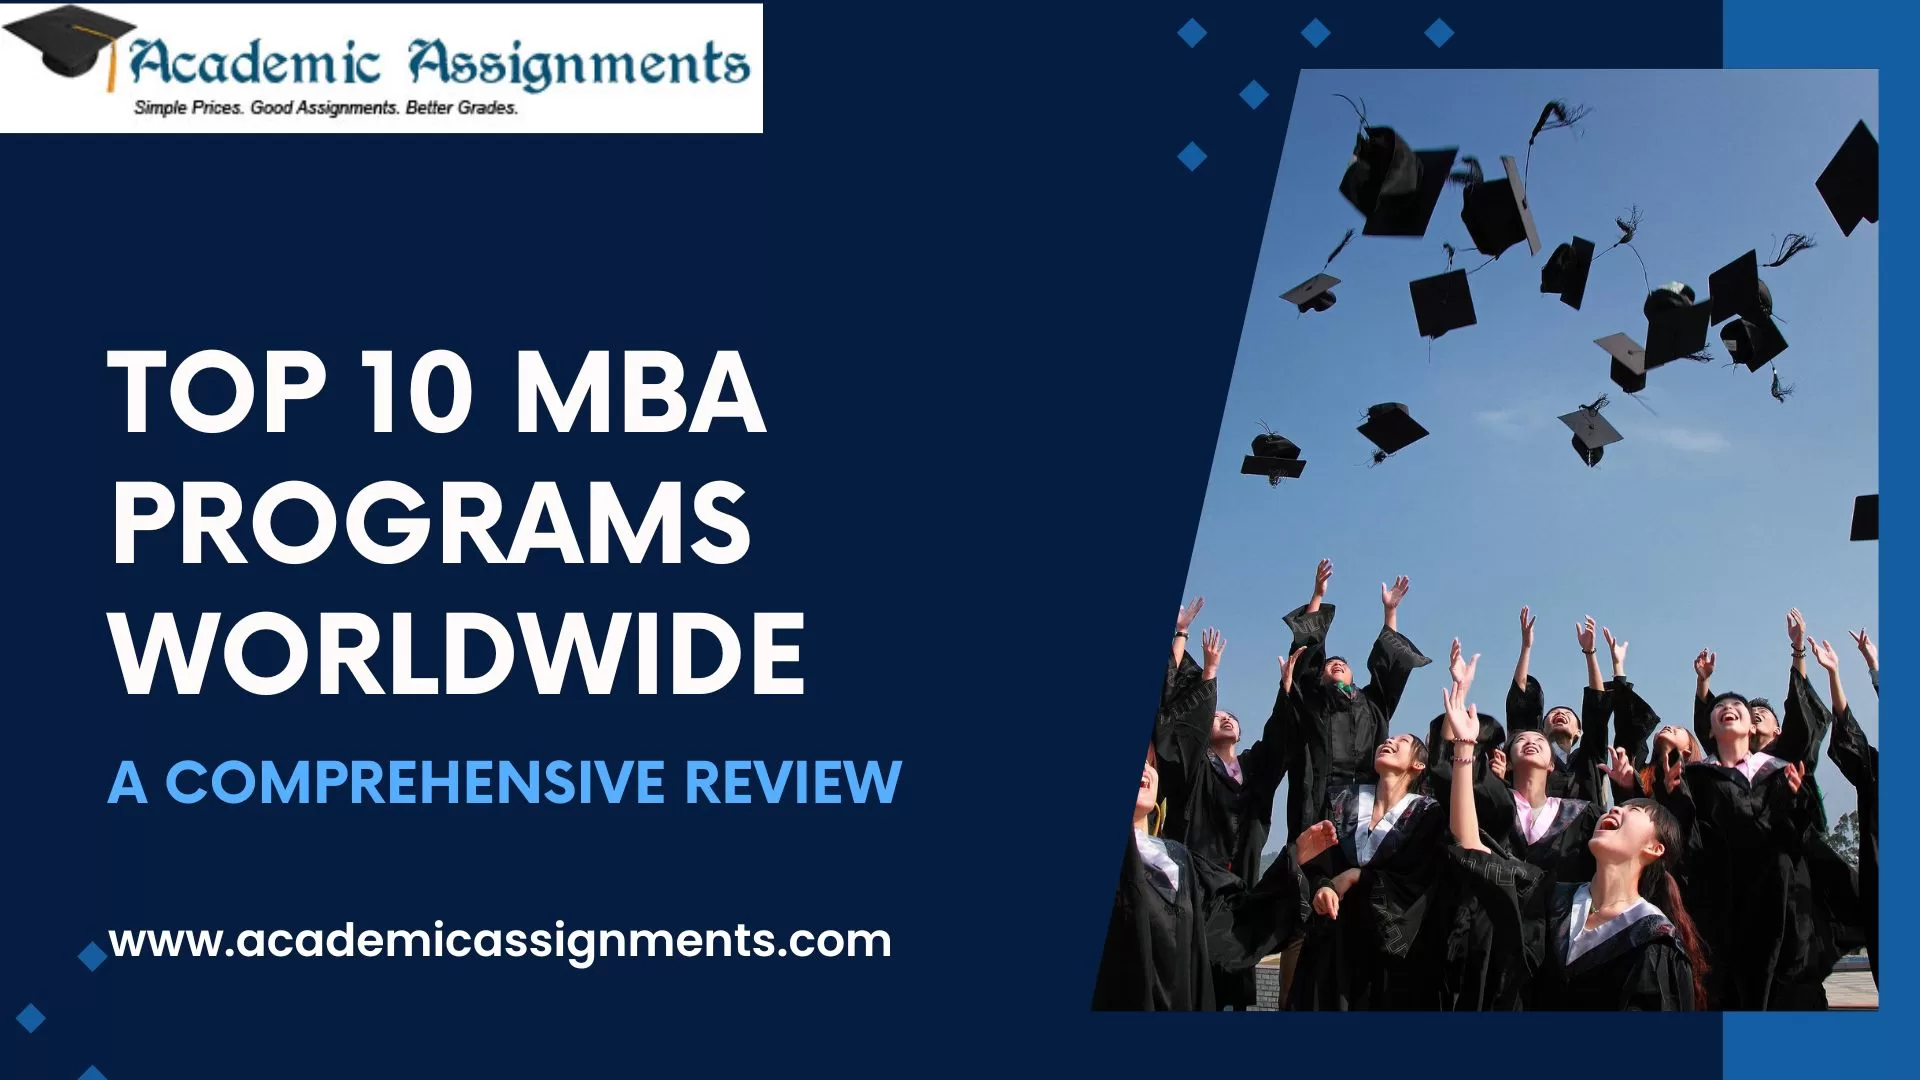 Top 10 MBA Programs Worldwide